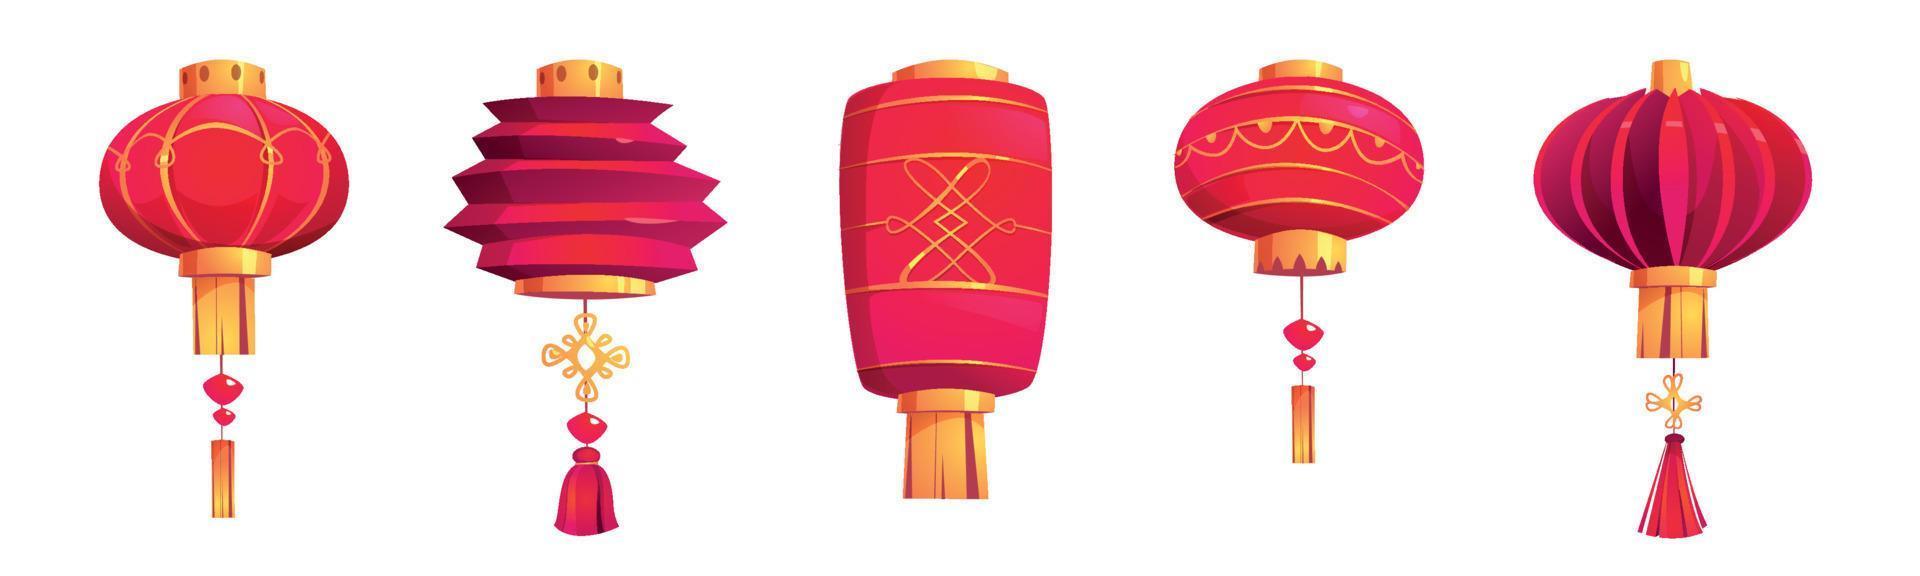 linternas rojas del festival chino, lámparas de papel asiáticas vector